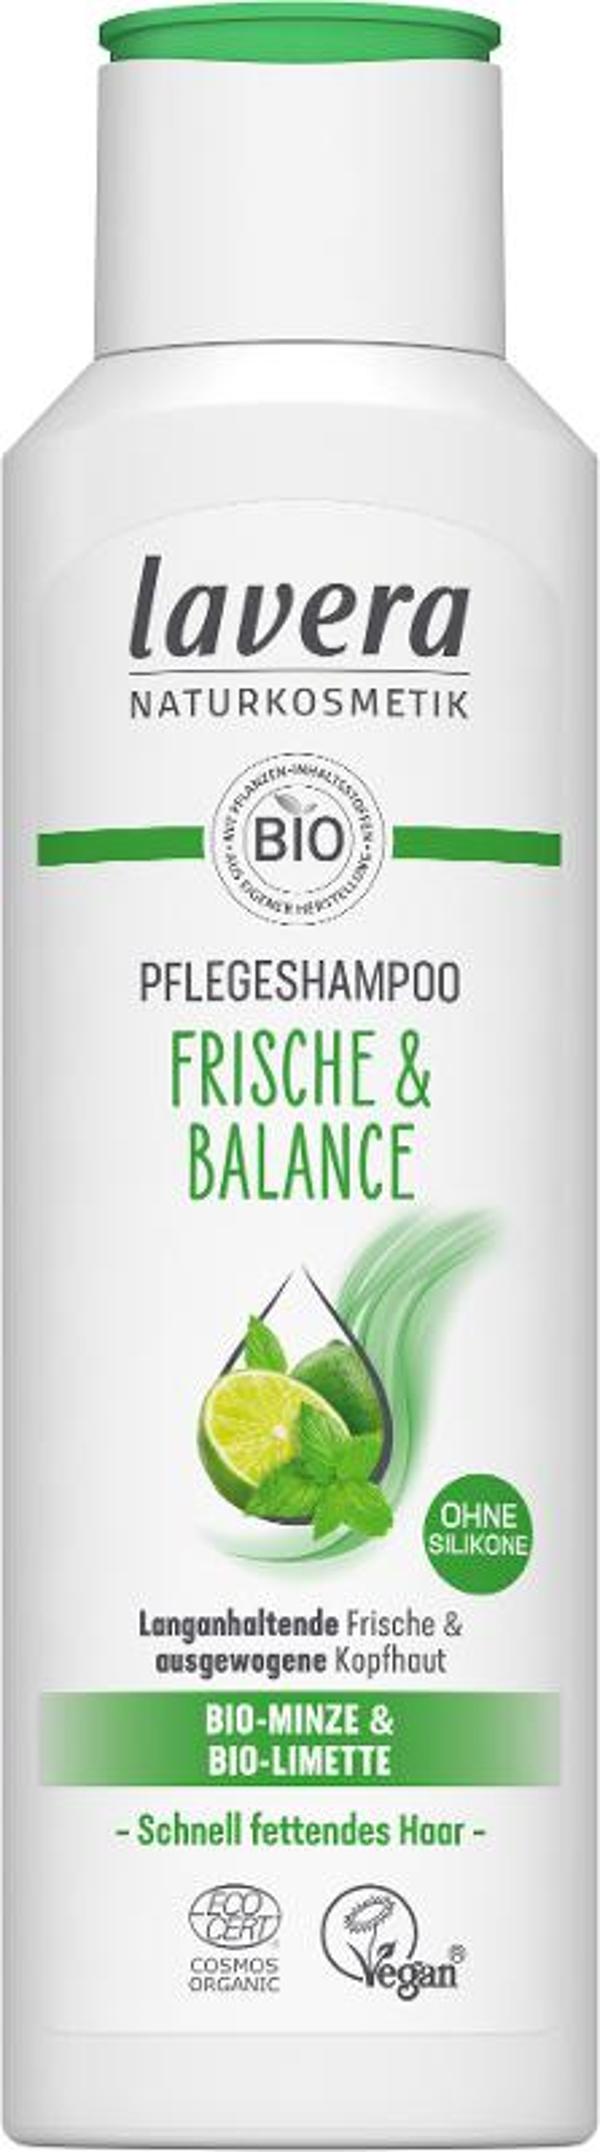 Produktfoto zu Pflegeshampoo Frische & Balance, 250ml